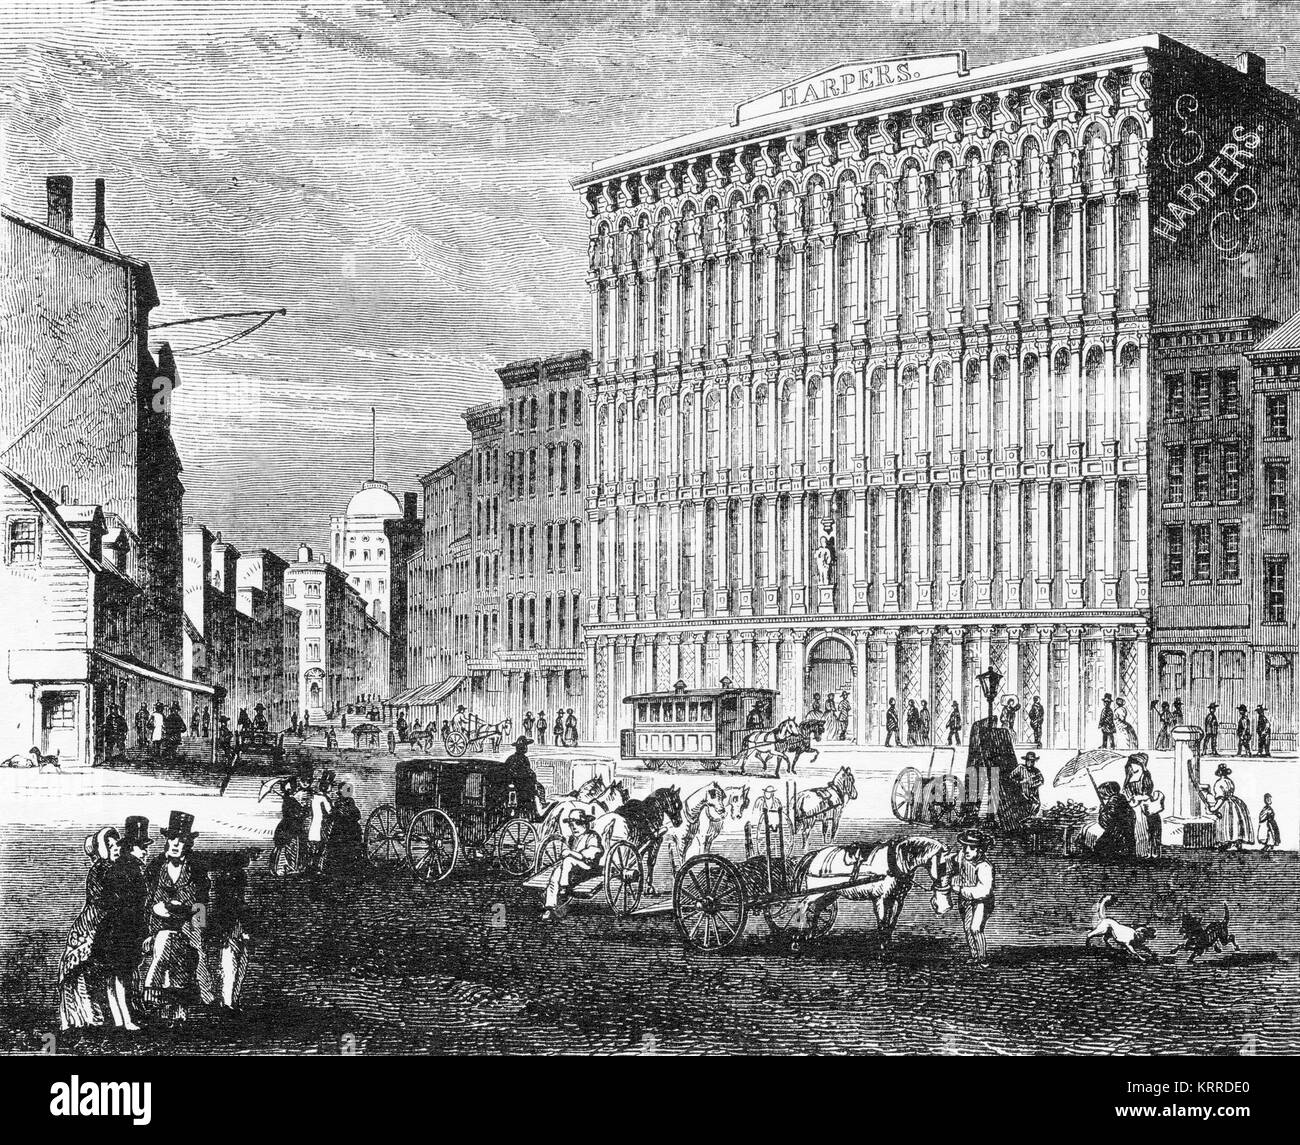 Incisione del Harpers printing company Building a New York. Da Harper stabilimento da Jacob Abbott, 1855. Foto Stock